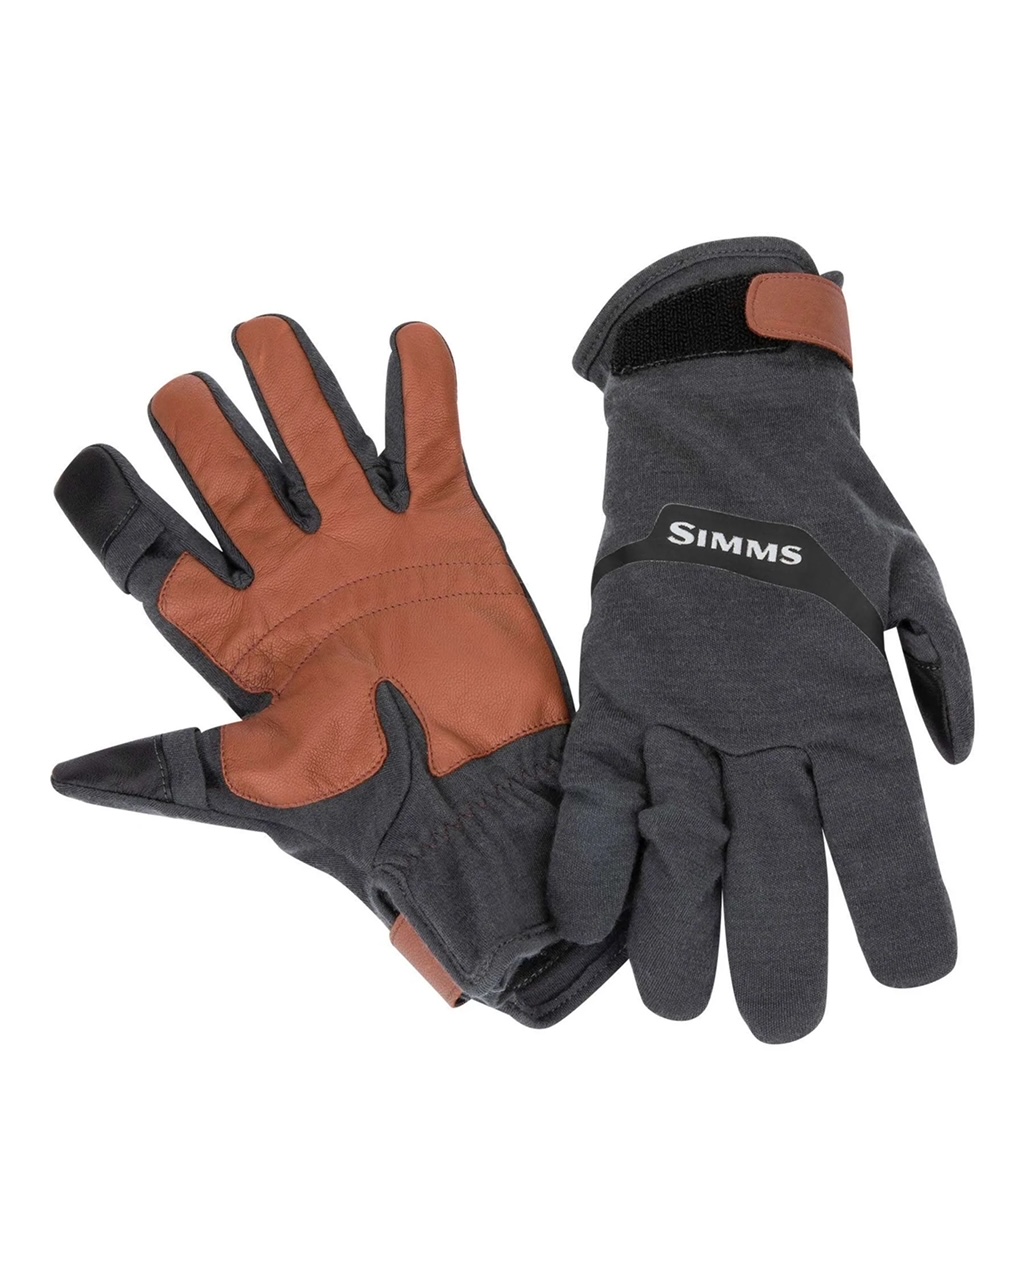 Simms Lightweight Wool Flex Glove - Small